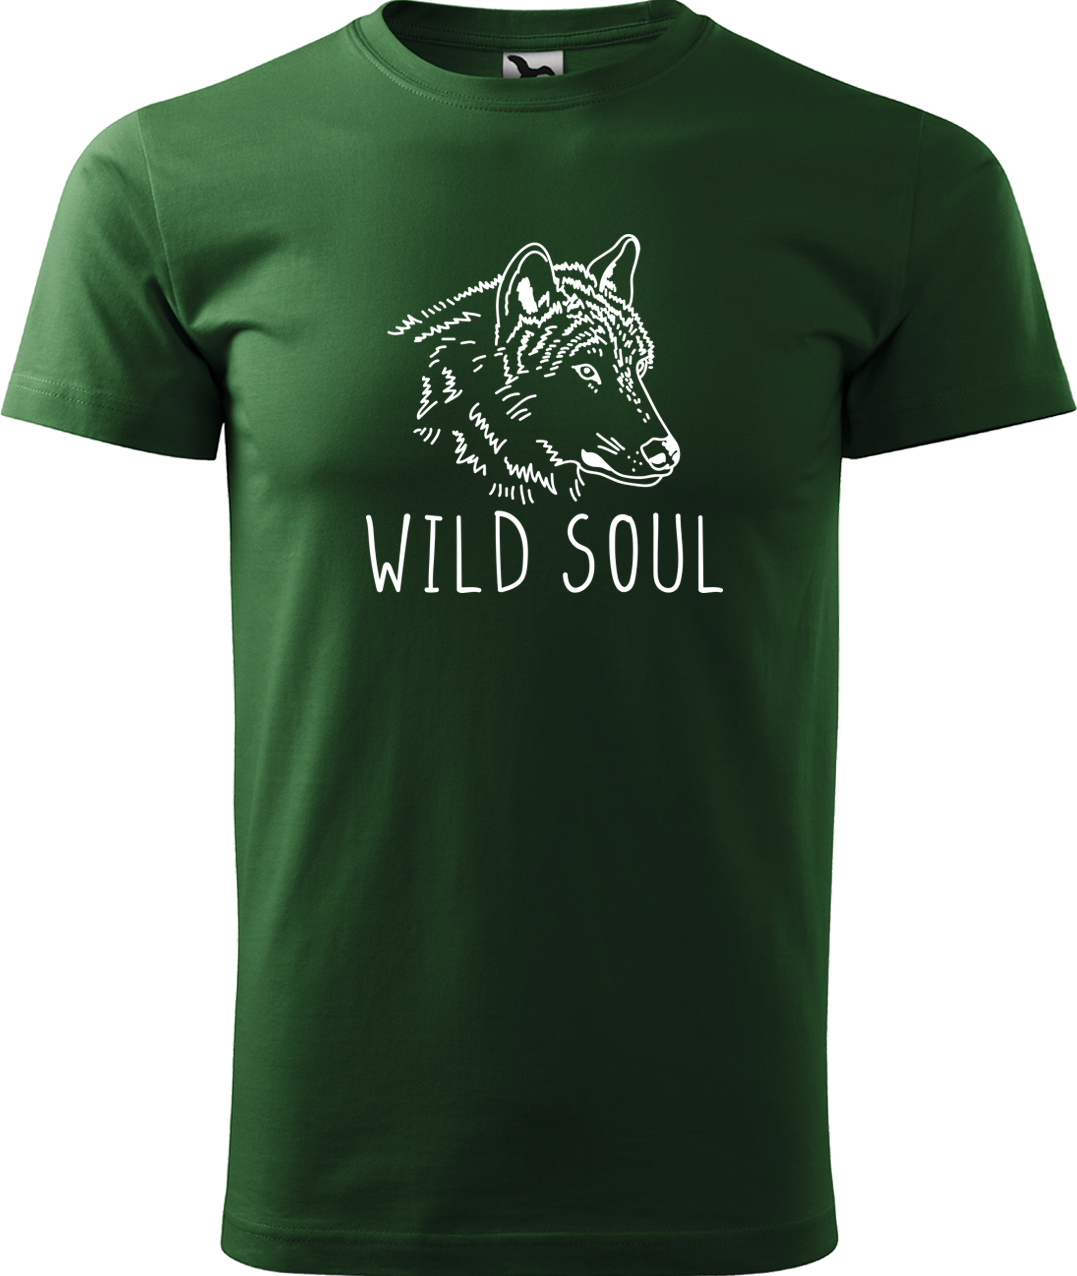 Pánské tričko s vlkem - Wild soul Velikost: 4XL, Barva: Lahvově zelená (06), Střih: pánský